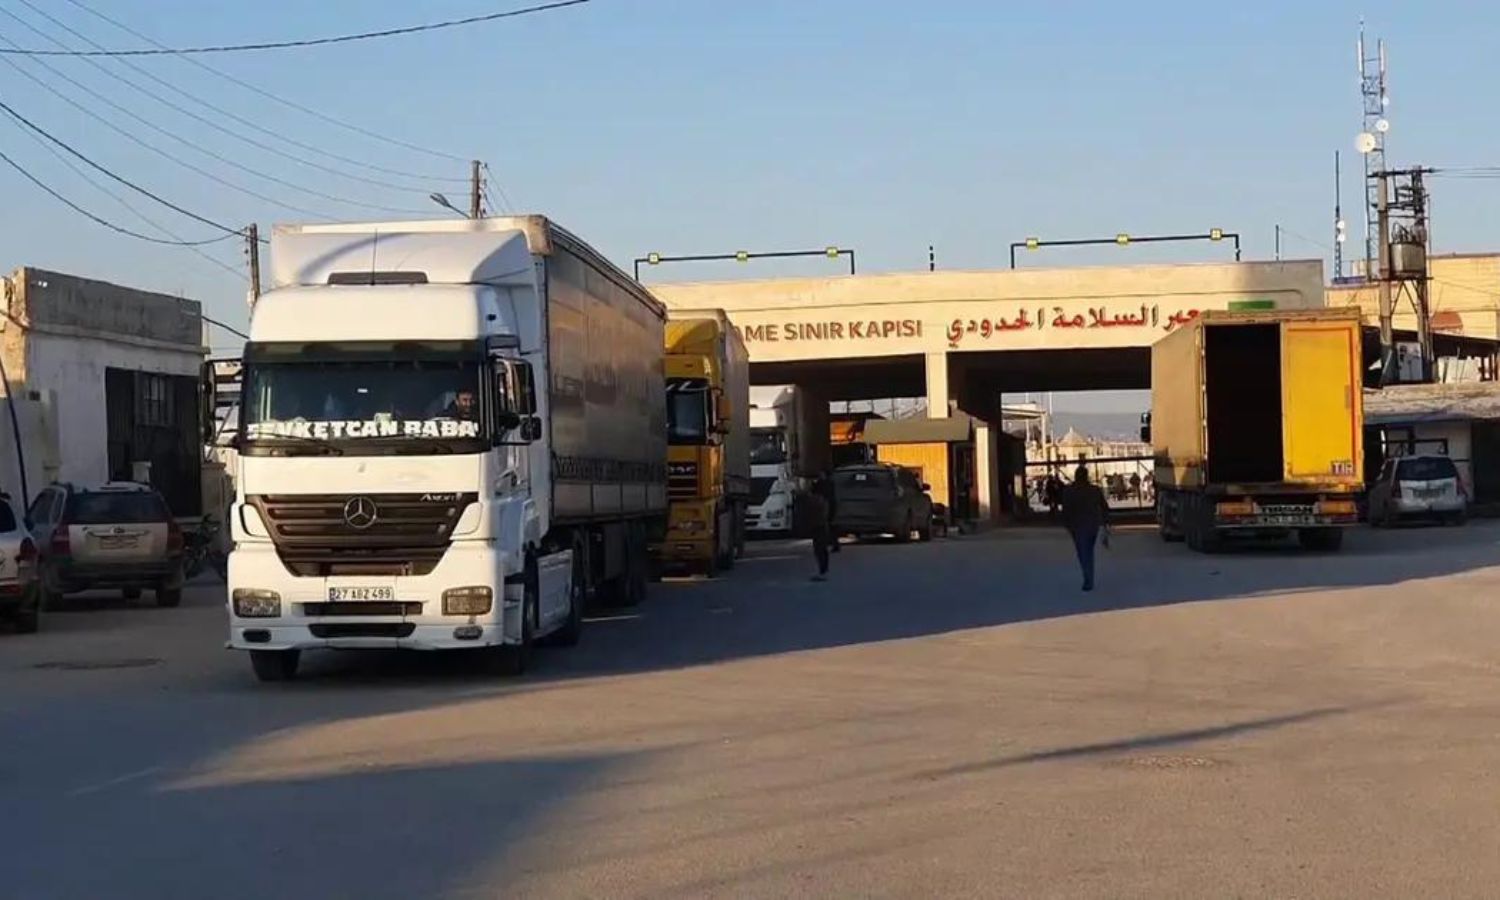 شاحنة مساعدات من الأمم المتحدة لمتضرري الزلزال في الشمال السوري تدخل عبر معبر "باب السلامة"- 14 من آذار 2023 (الحكومة السورية المؤقتة/ فيس بوك)